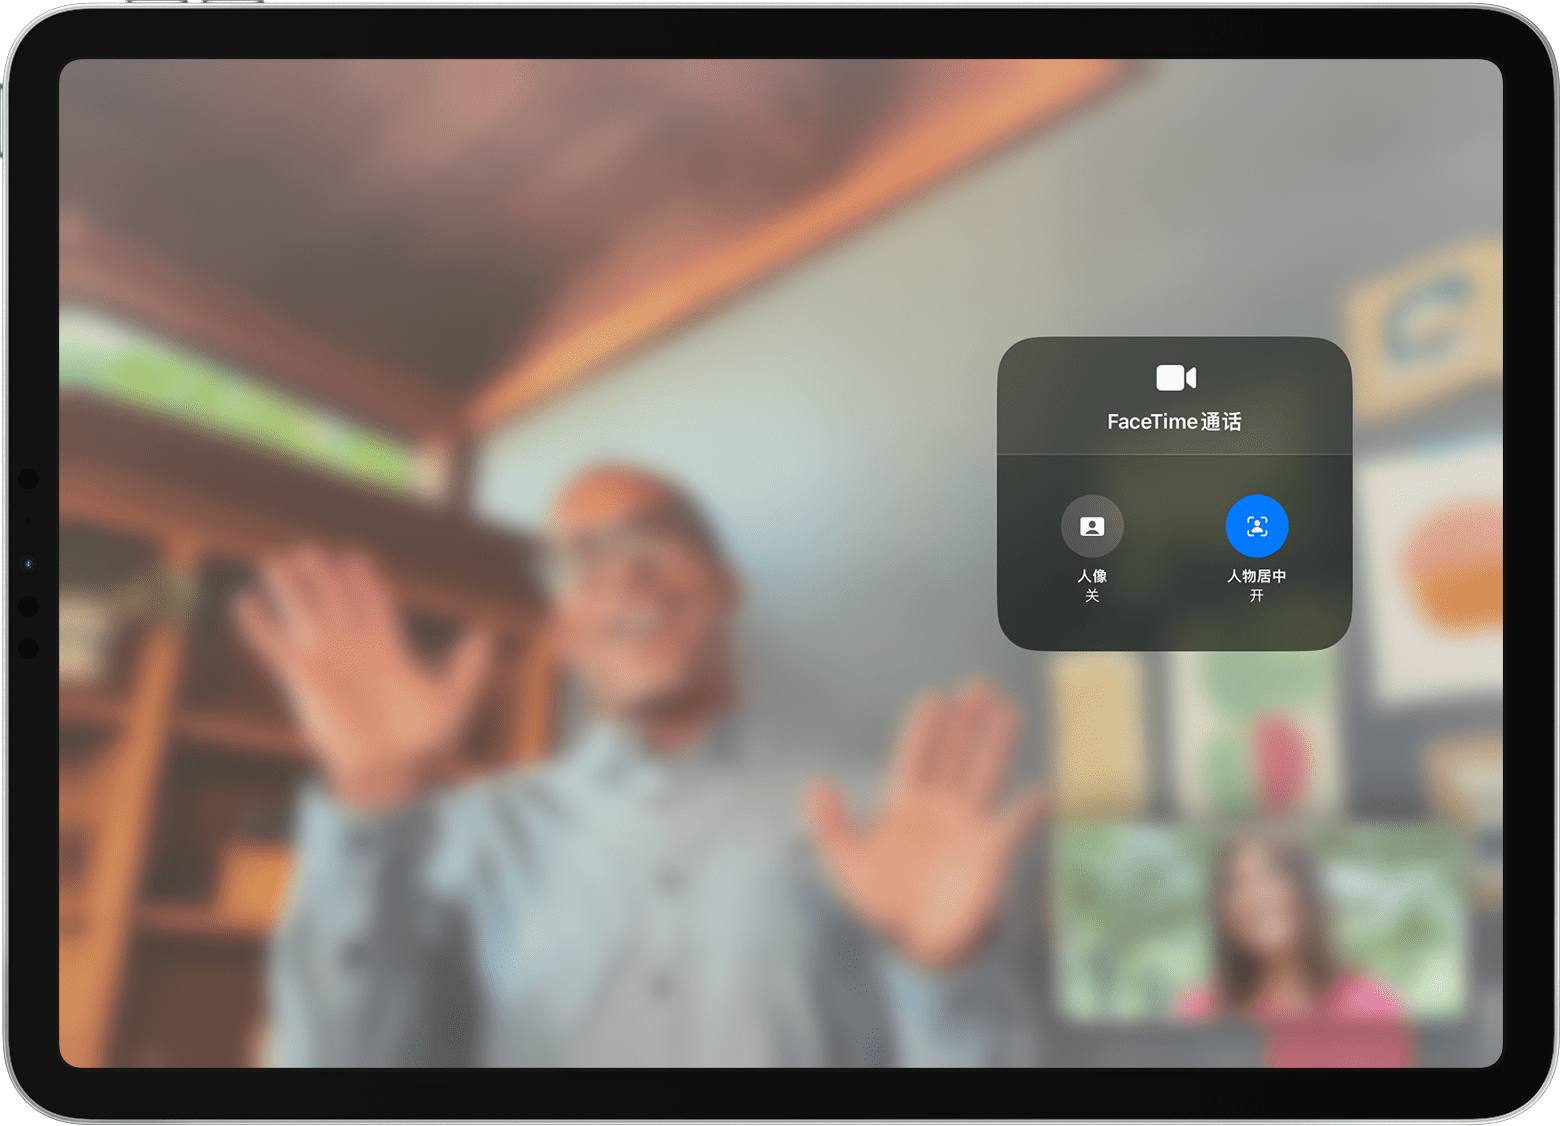 iPad 屏幕显示正在进行 FaceTime 通话，而且可以看到“视频效果”选项